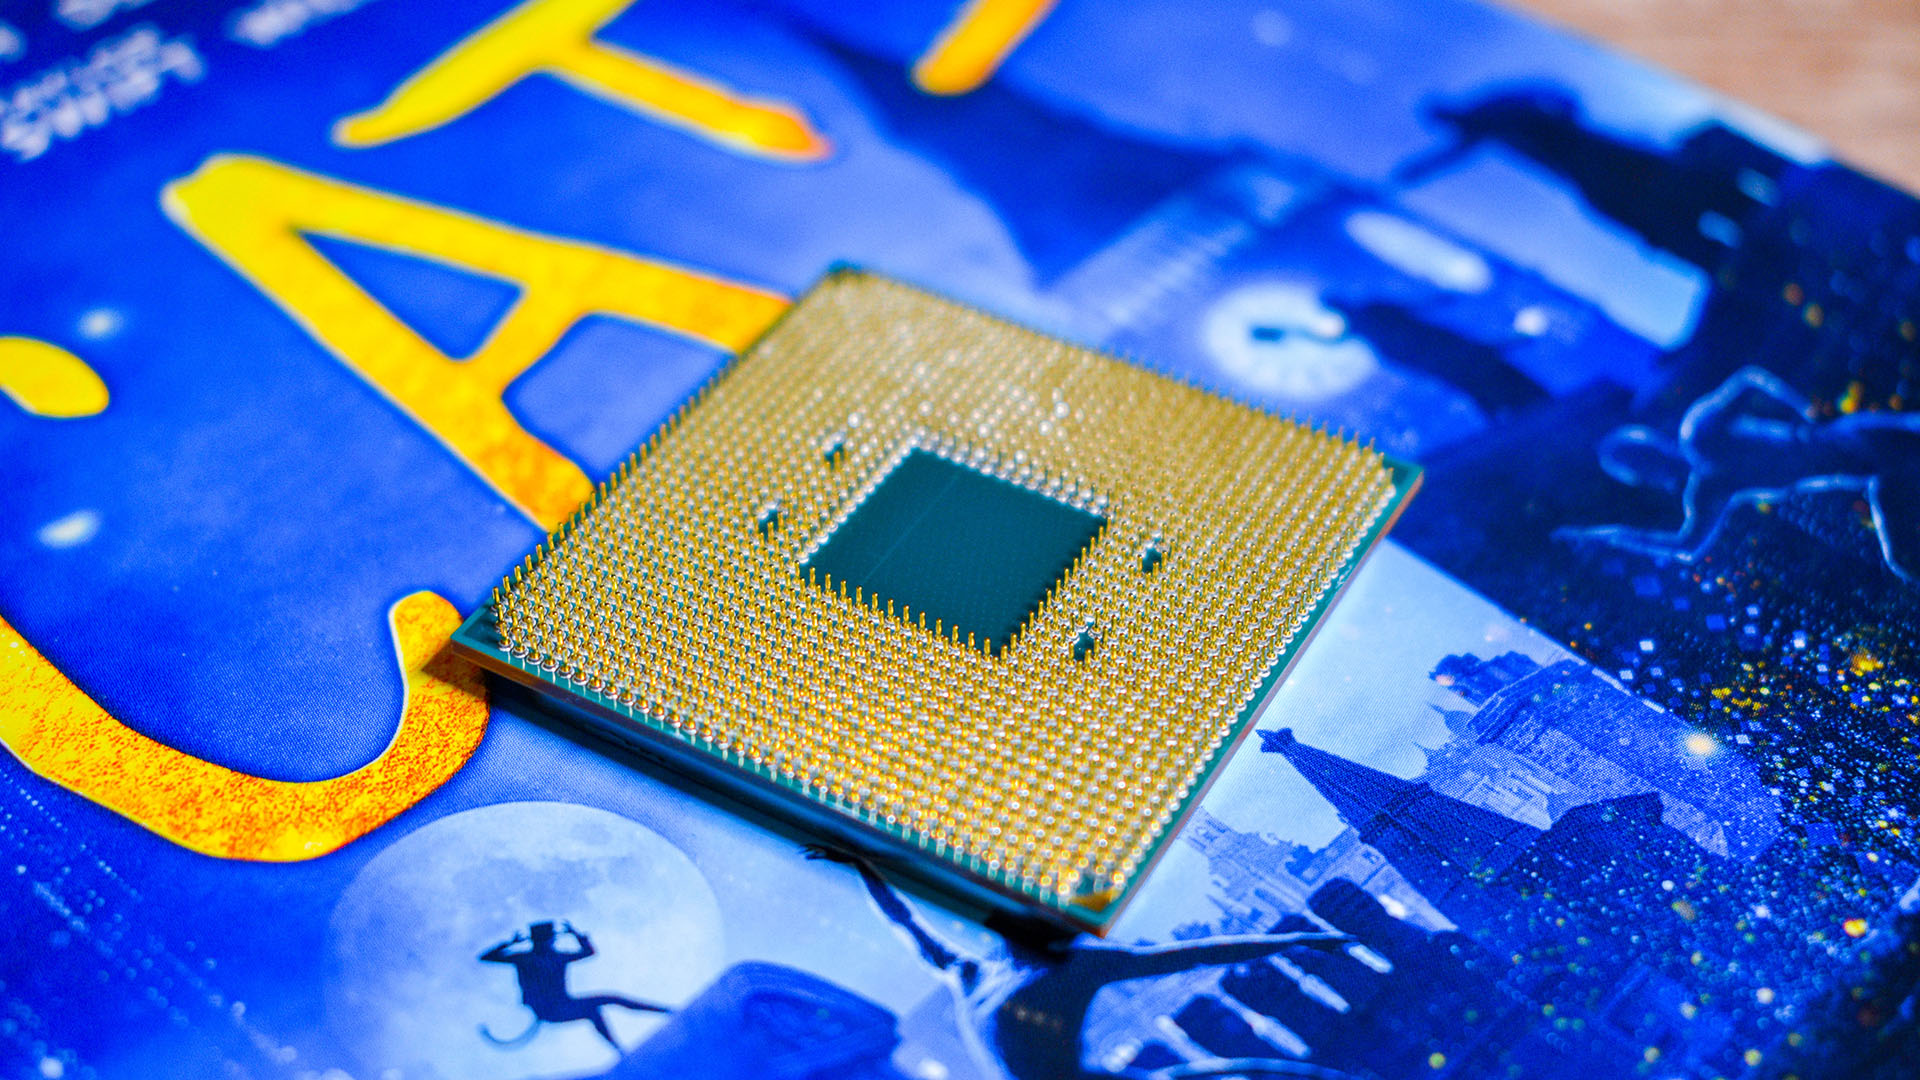 Процессоры AMD Zen 5 «неизбежны», и другой производитель материнских плат, похоже, подтверждает, что это чипы Ryzen 9000.